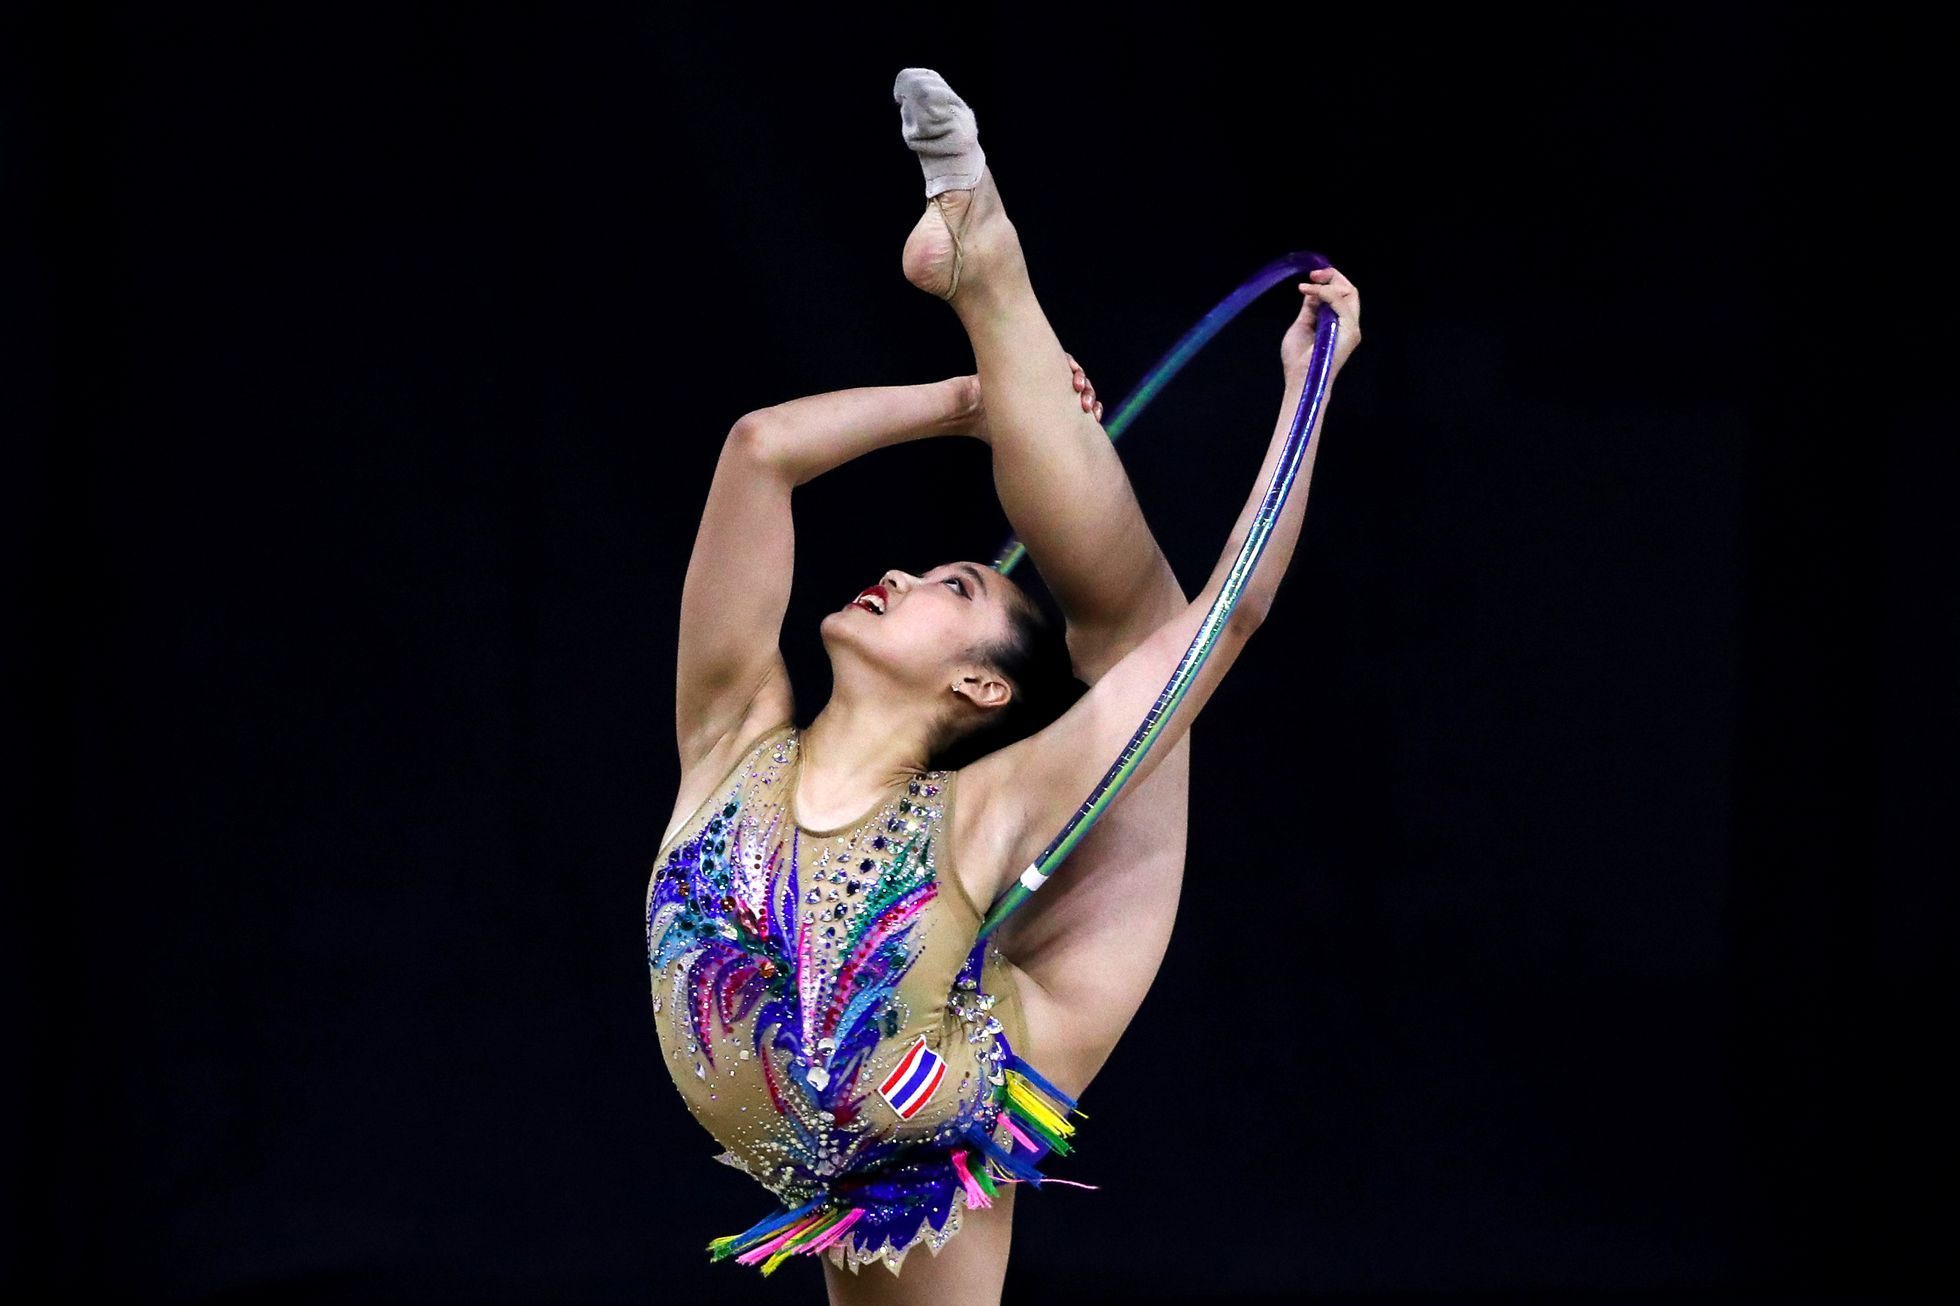 Hry Jihovýchodní Asie 2020: moderní gymnastika